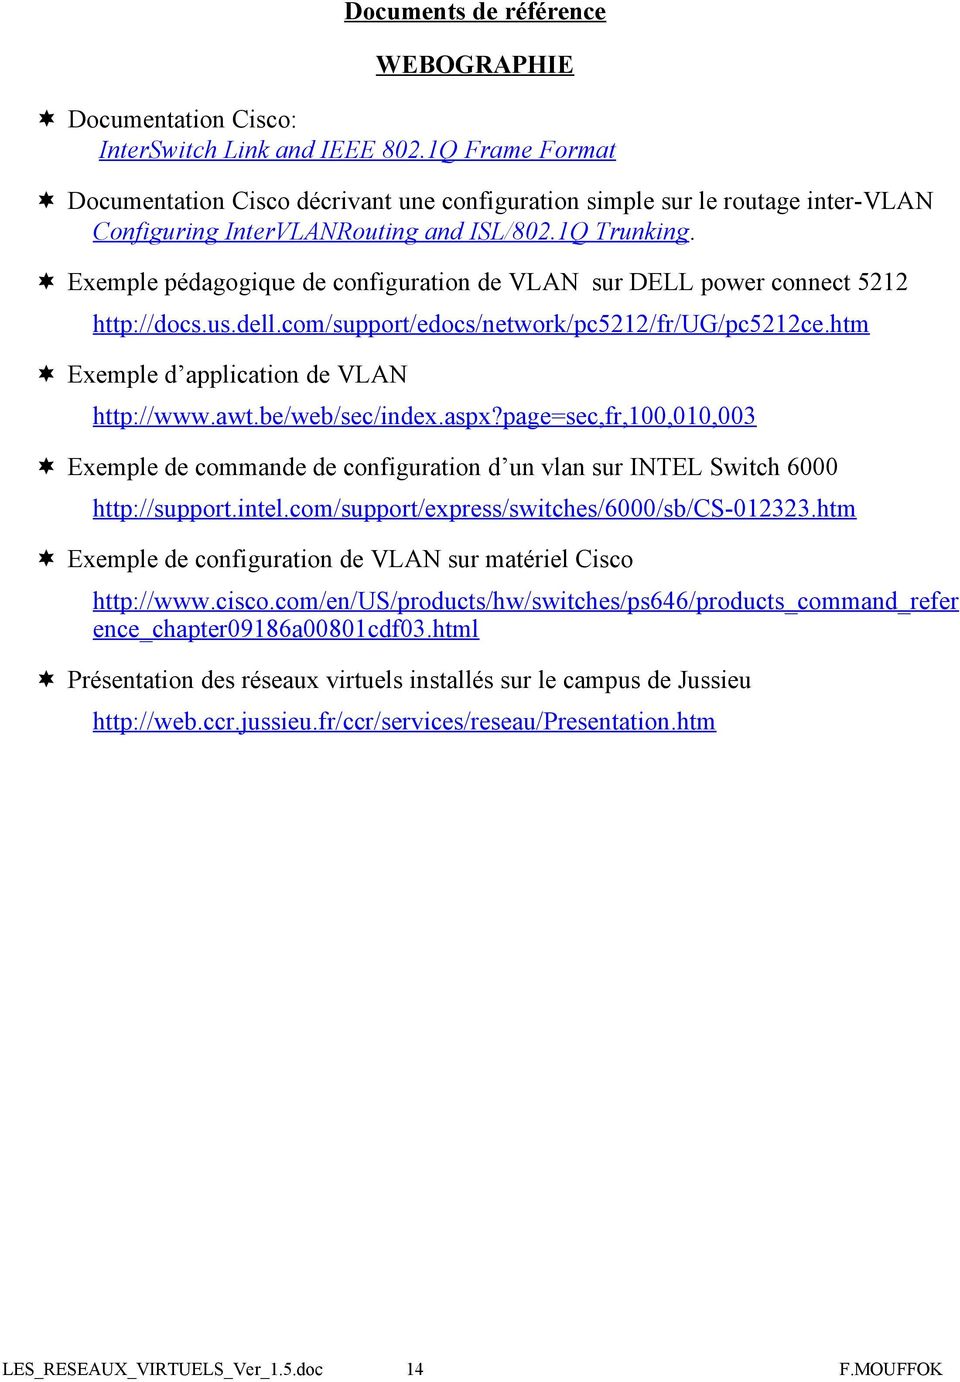 Exemple pédagogique de configuration de VLAN sur DELL power connect 5212 http://docs.us.dell.com/support/edocs/network/pc5212/fr/ug/pc5212ce.htm Exemple d application de VLAN http://www.awt.